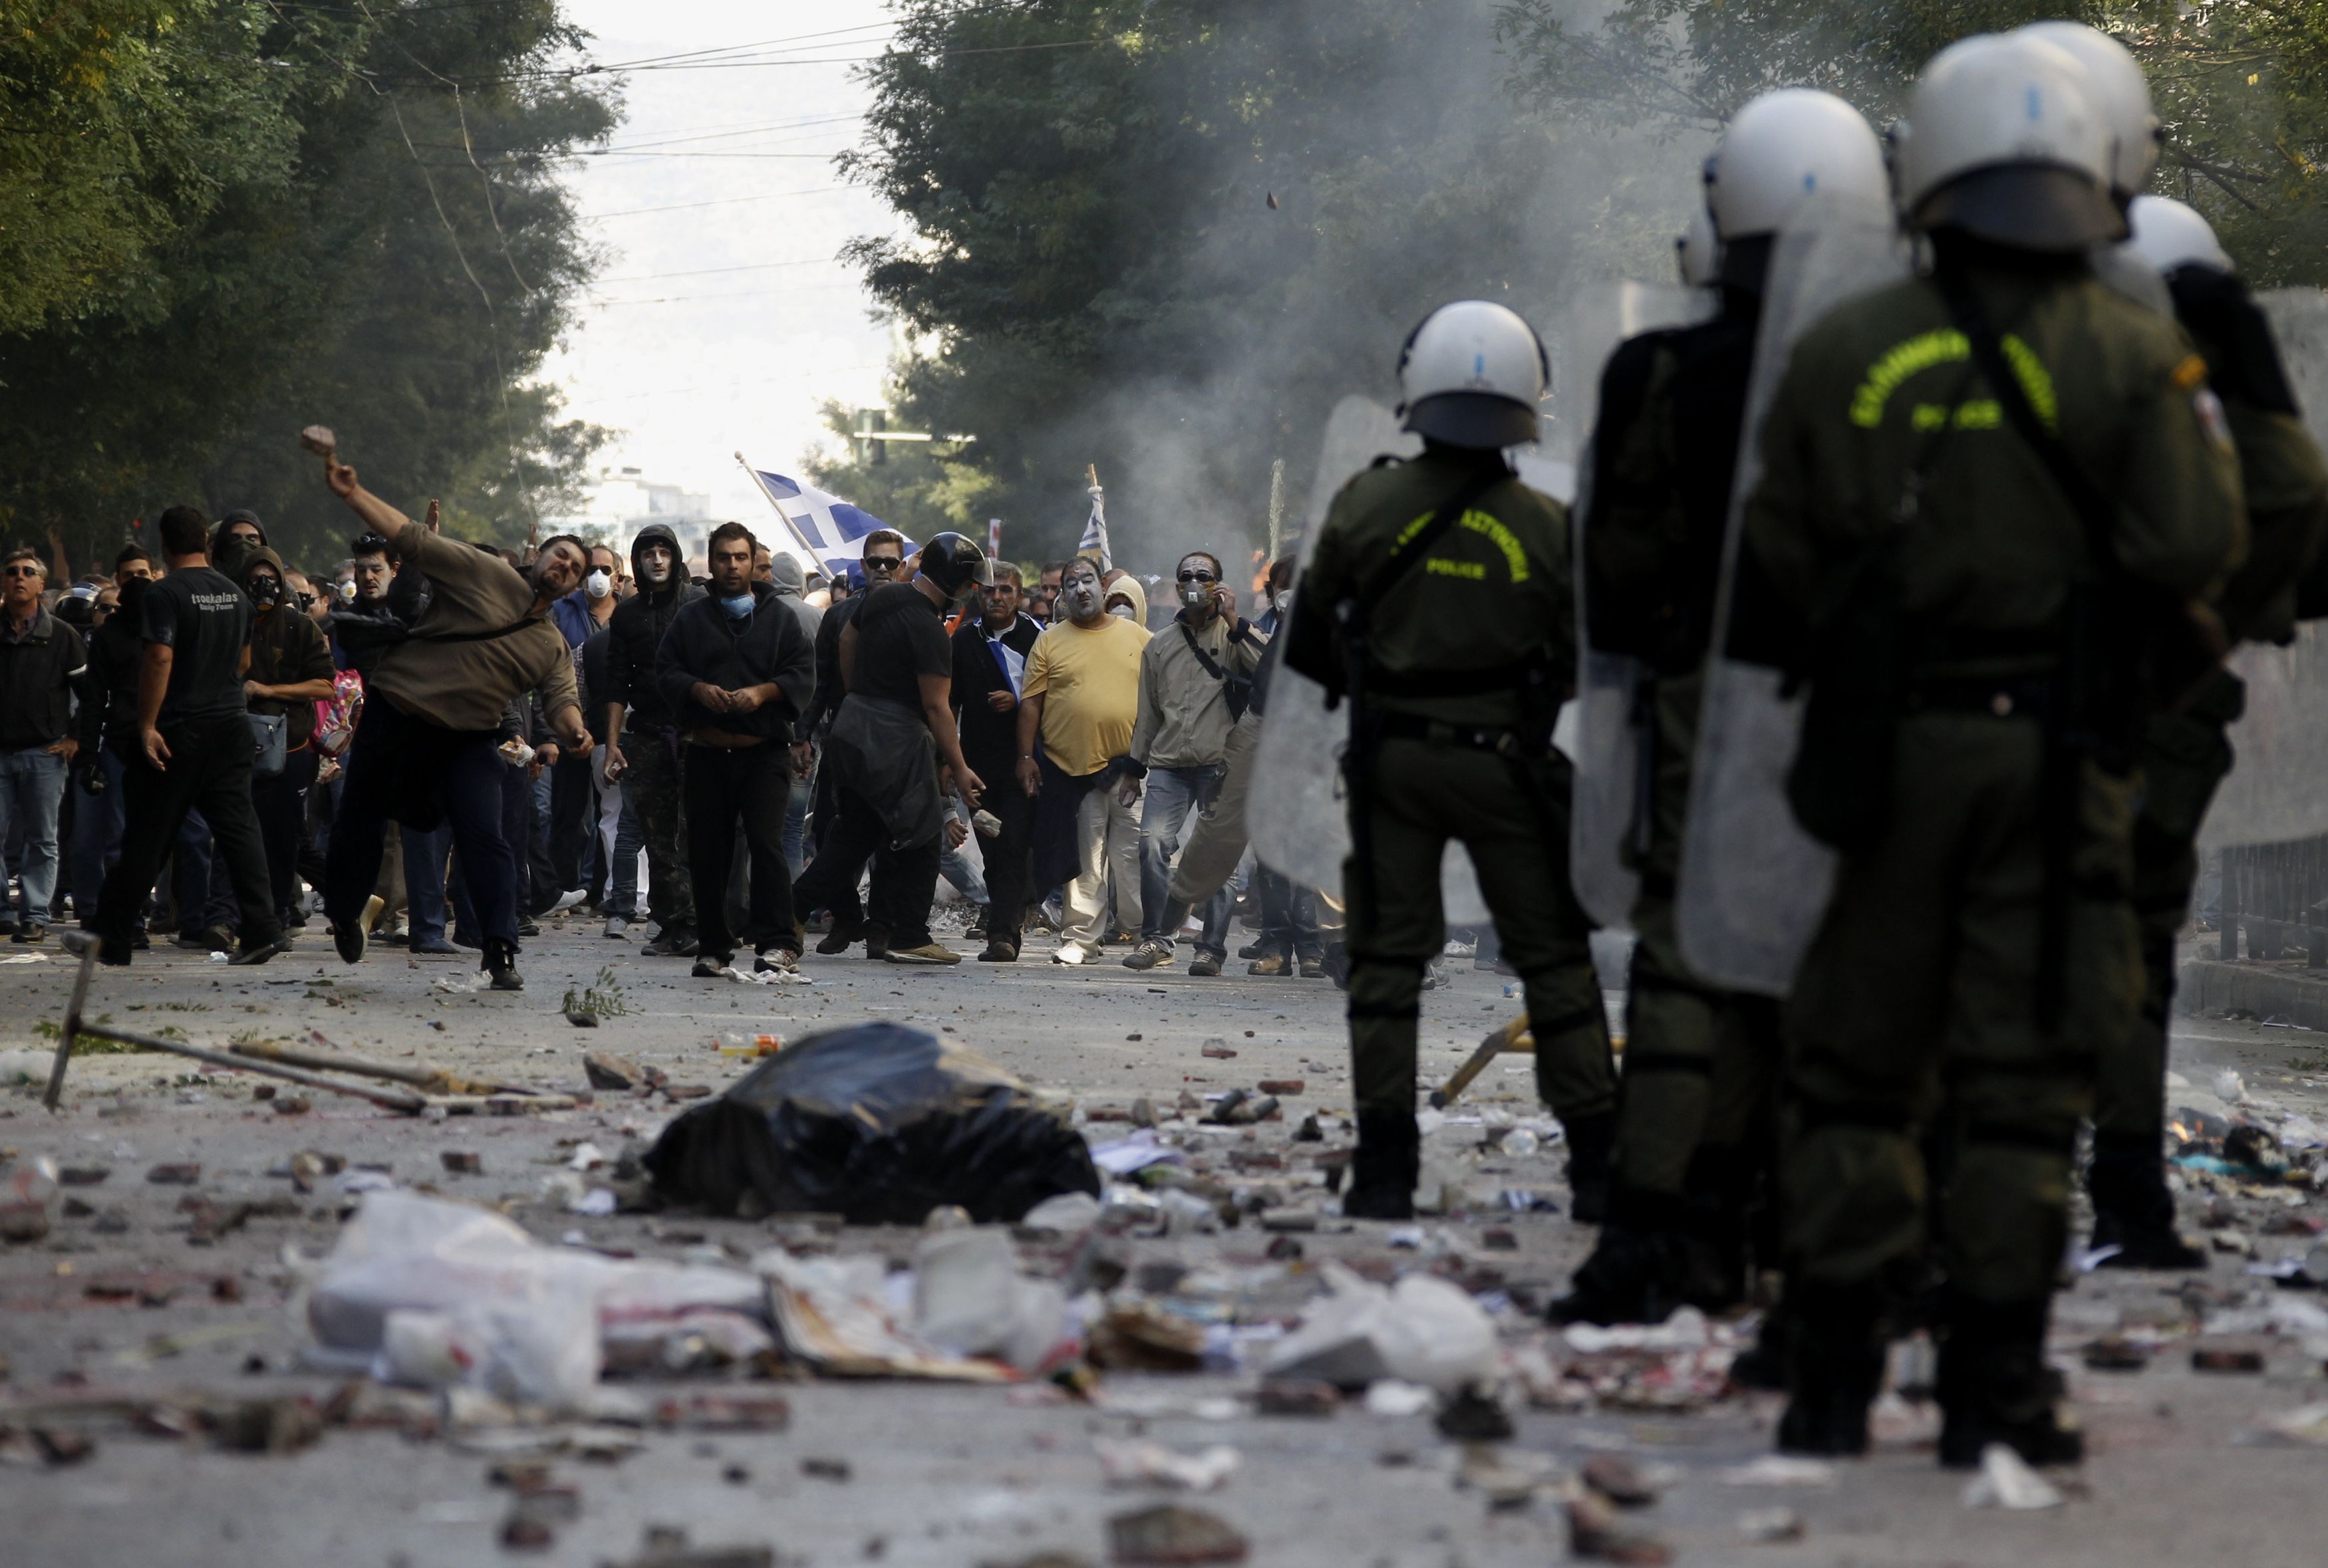 Τα ΜΑΤ δακρυγόνα. Οι διαδηλωτές πέτρες, μολότοφ και σκουπίδια